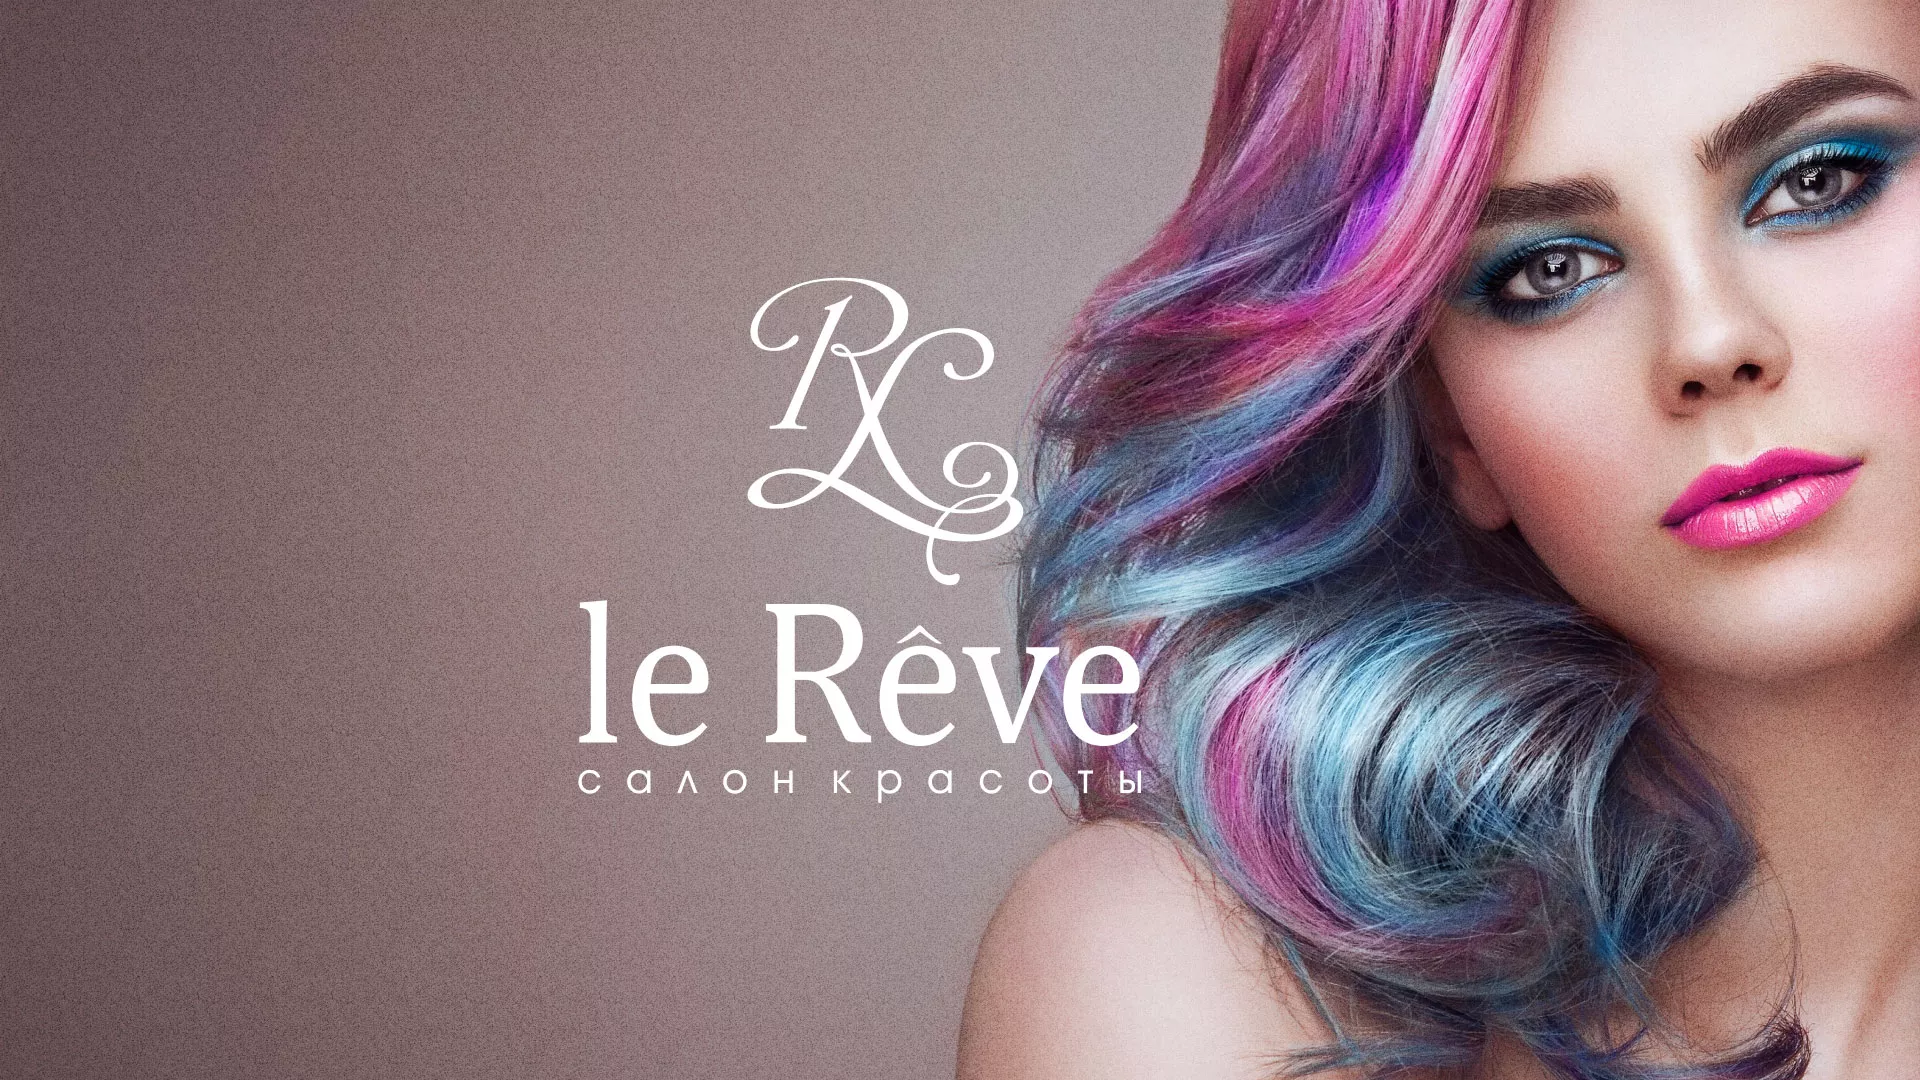 Создание сайта для салона красоты «Le Reve» в Курске